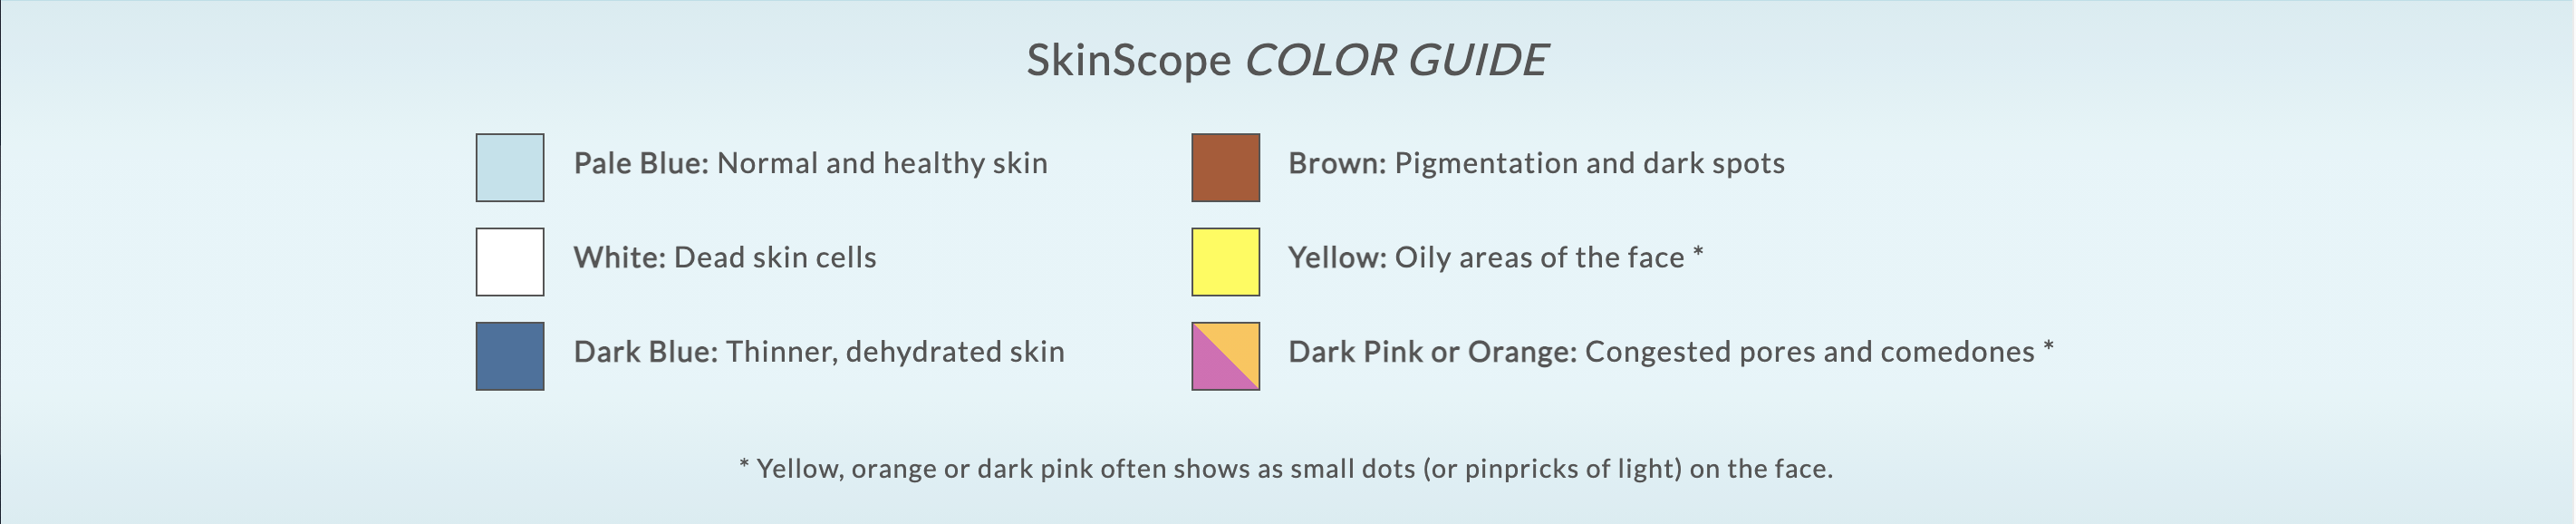 skin-scope-color-guide